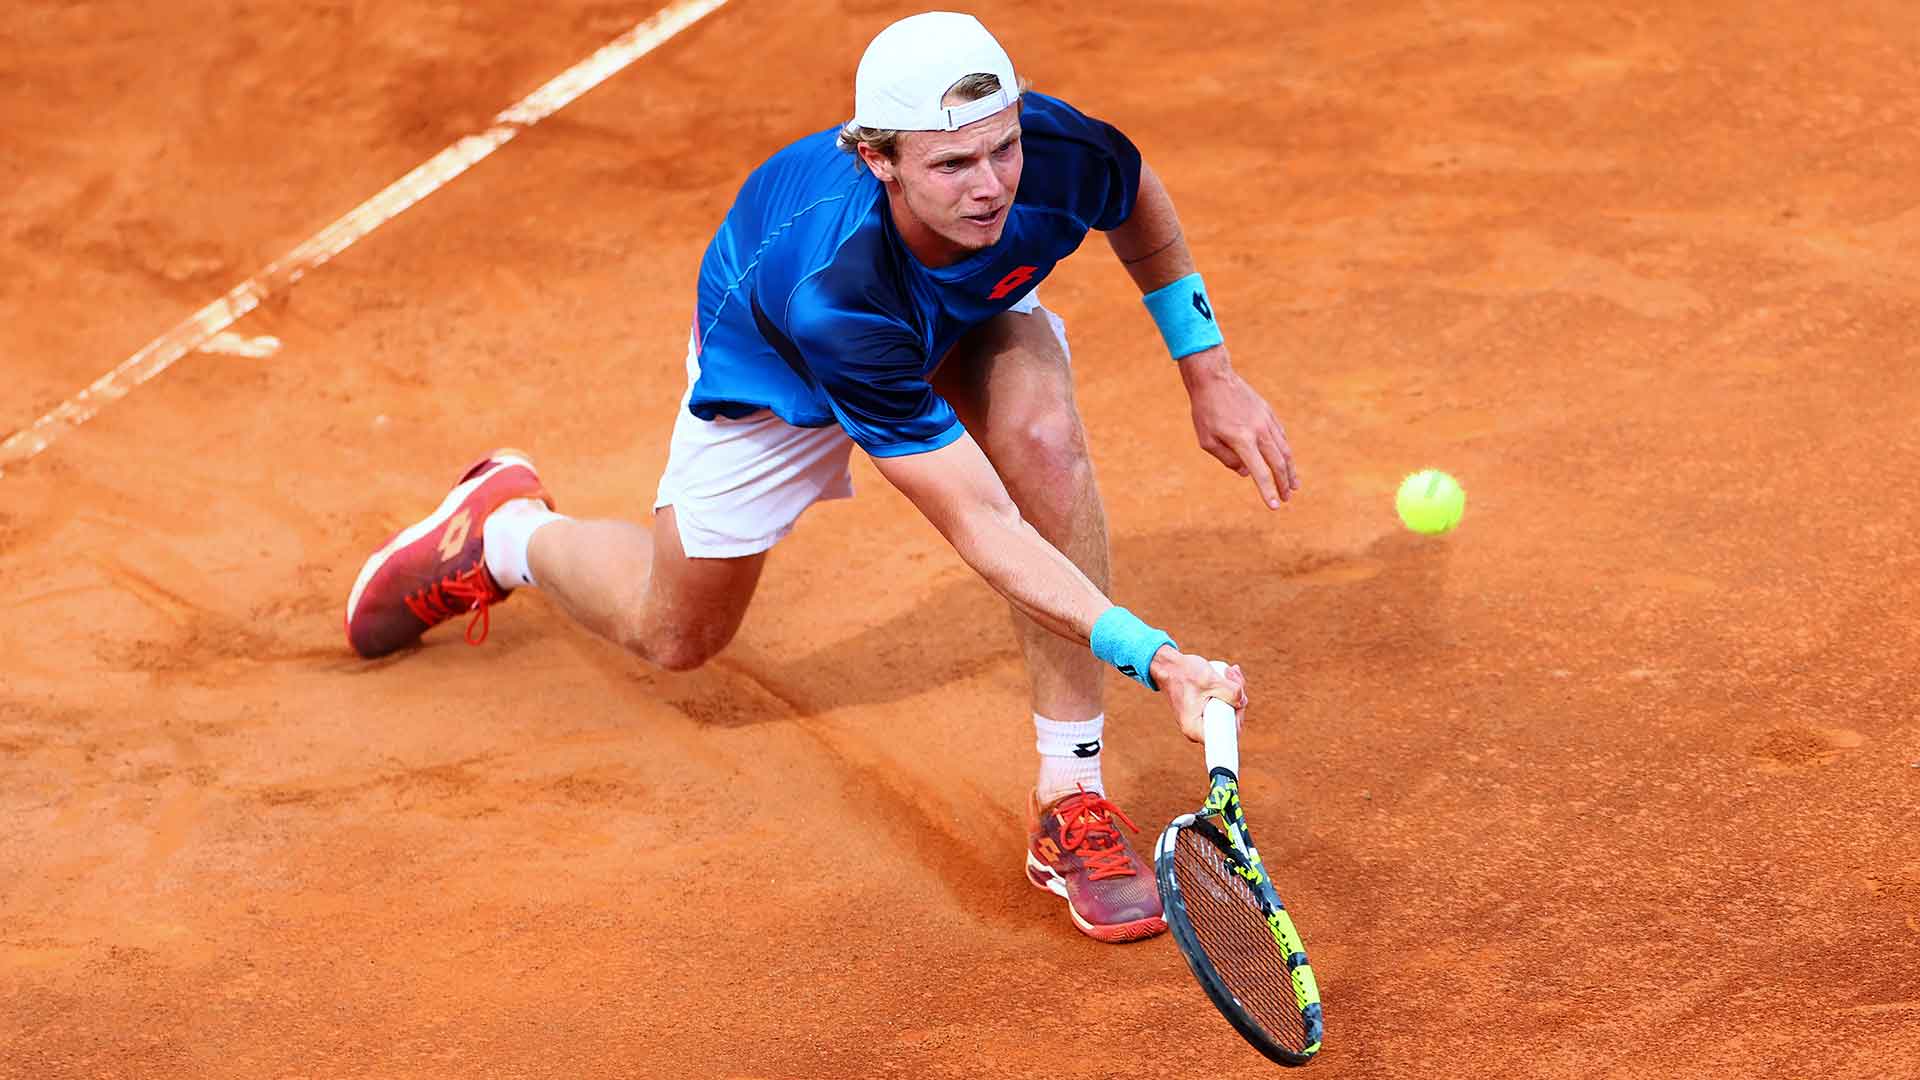 De Jong, Bergs qualify for Roland Garros